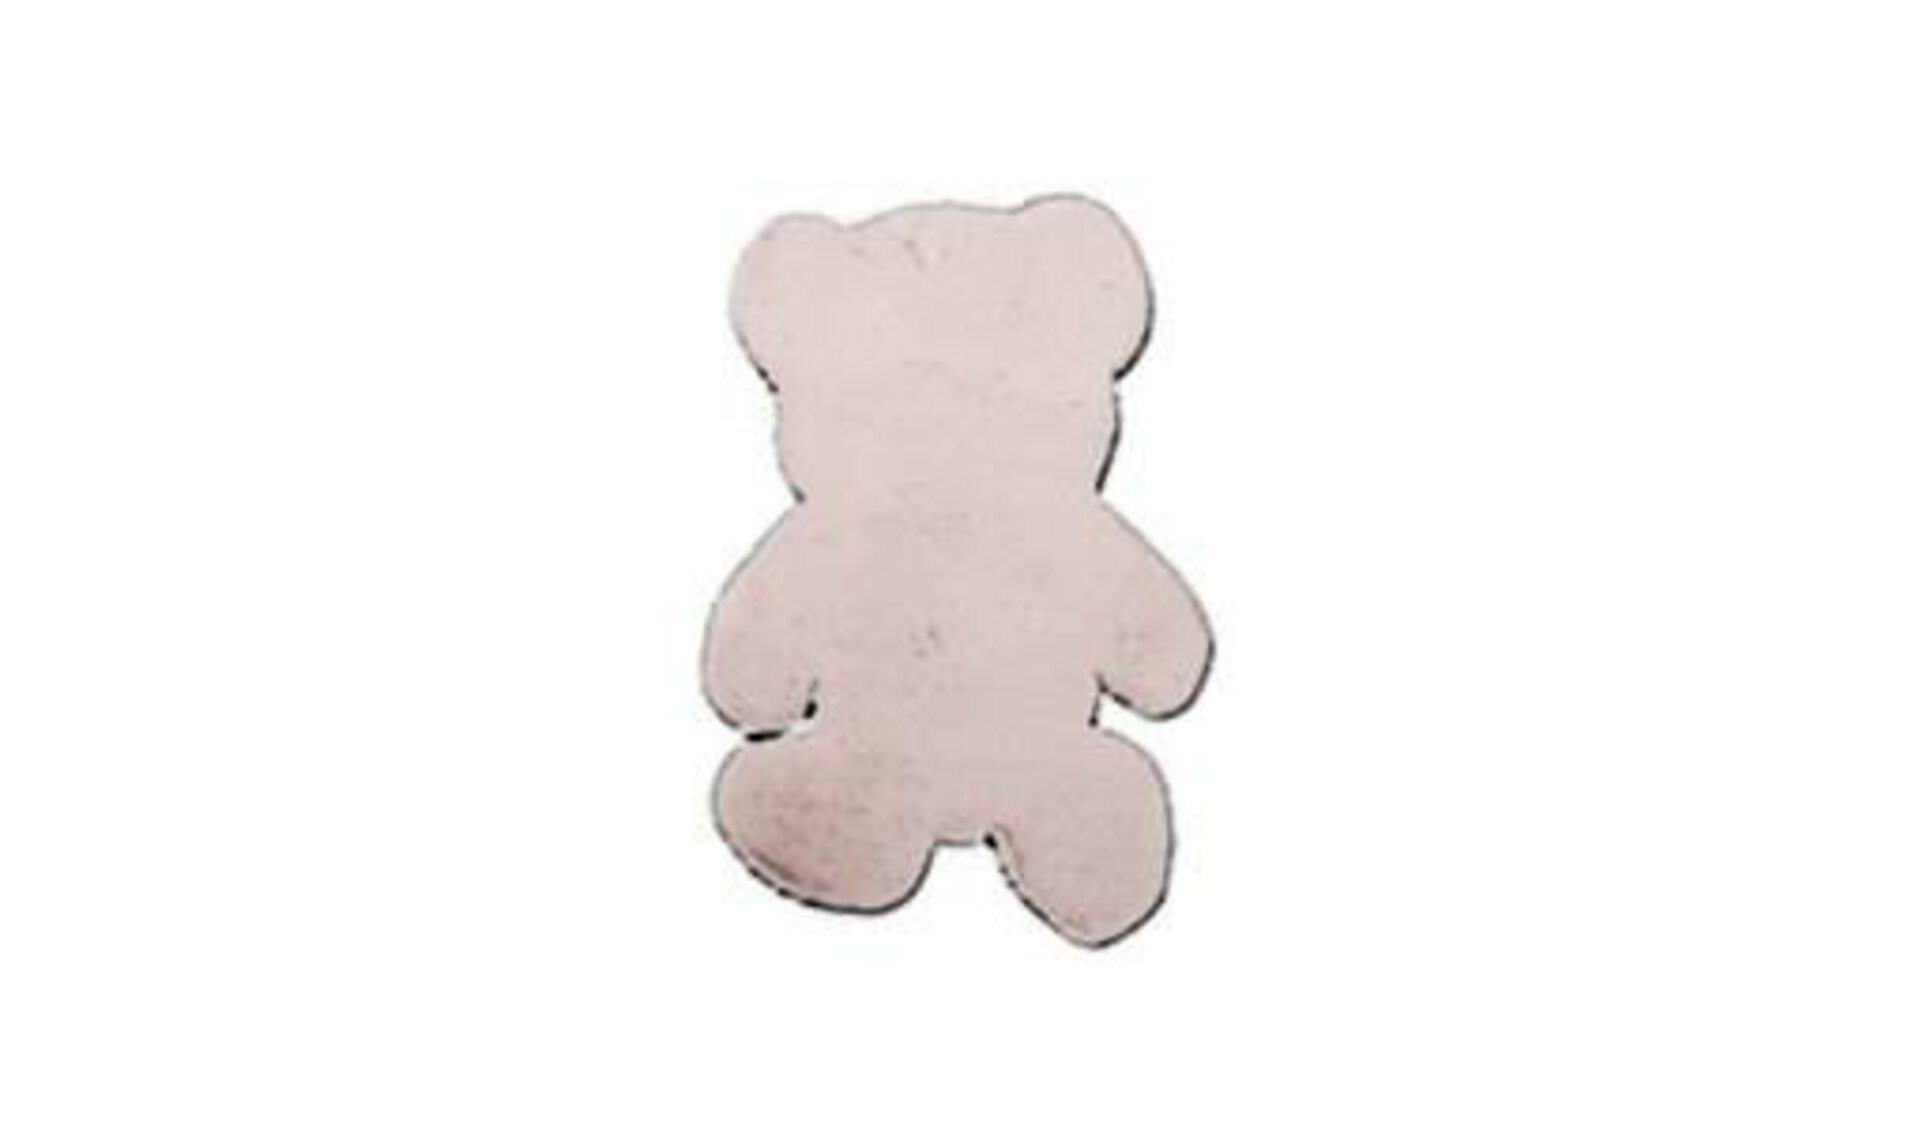 Kinderteppich in form eines flauschige Bärs als Sinnbild für alle kindgerechten Teppiche.